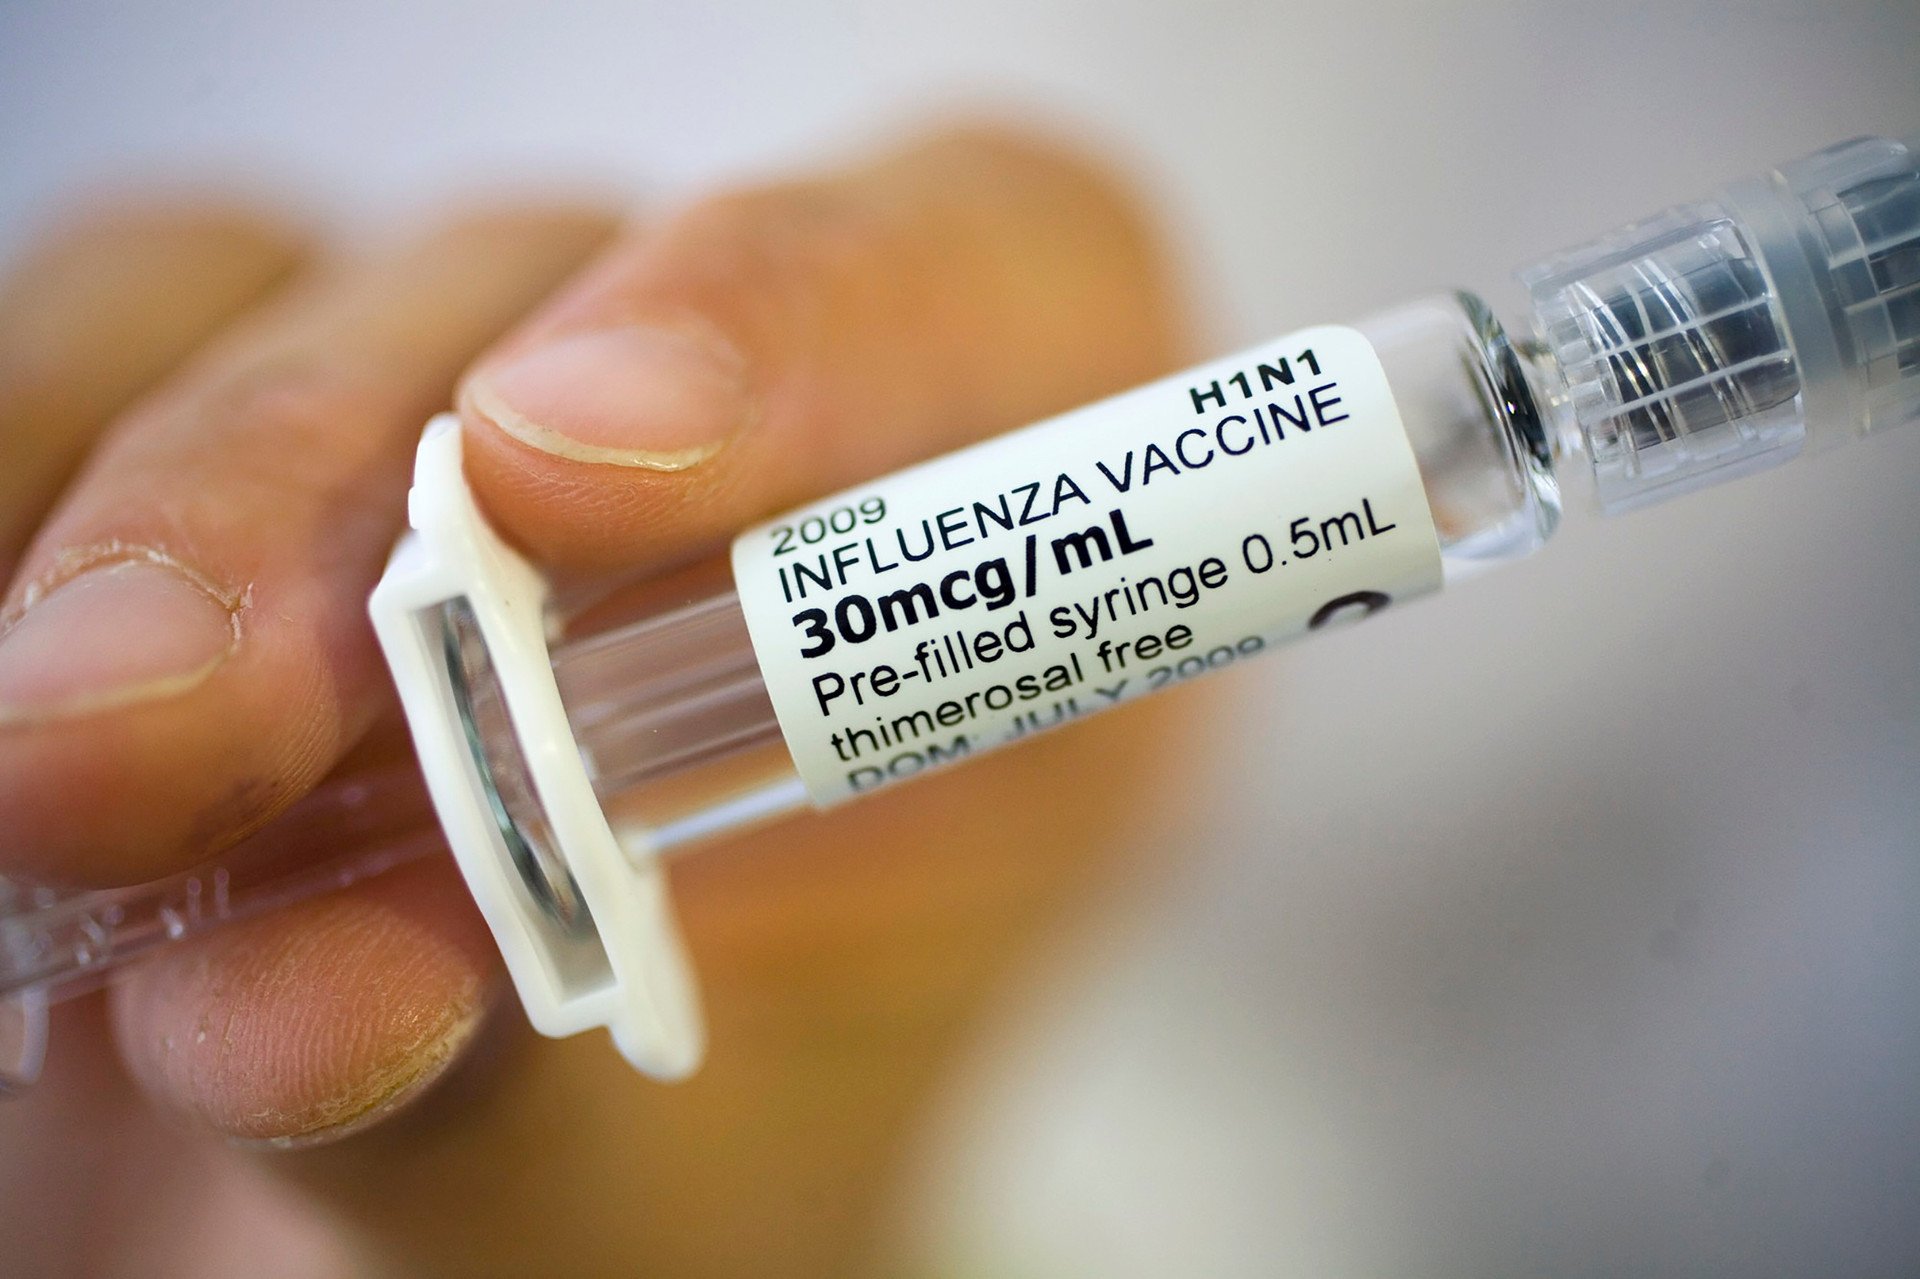 Sẽ tiêm miễn phí vaccine phòng ung thư cổ tử cung, cúm - 1